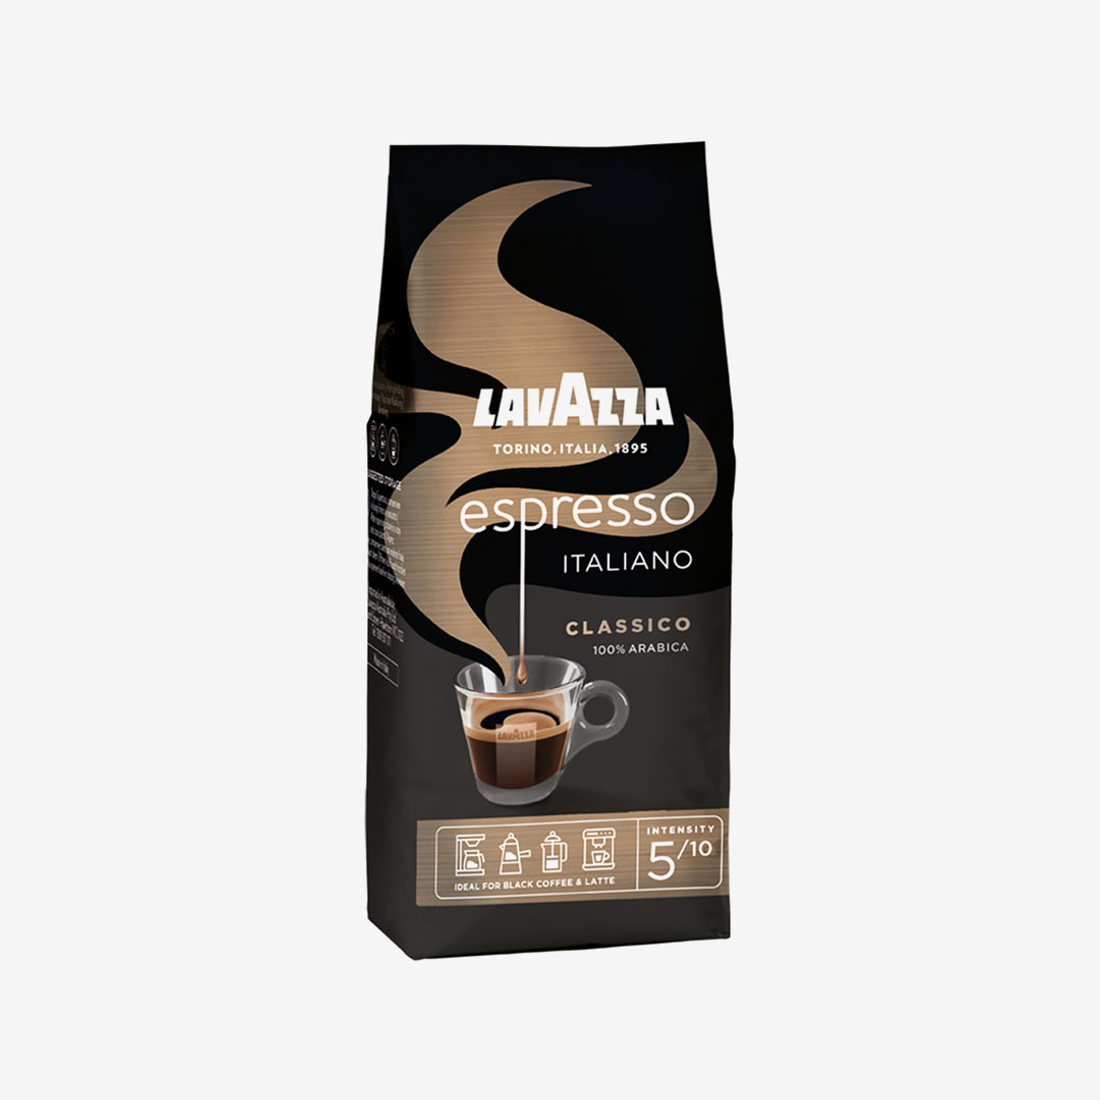 Lavazza Caffe Espresso coffee - ground coffee - 250 grams